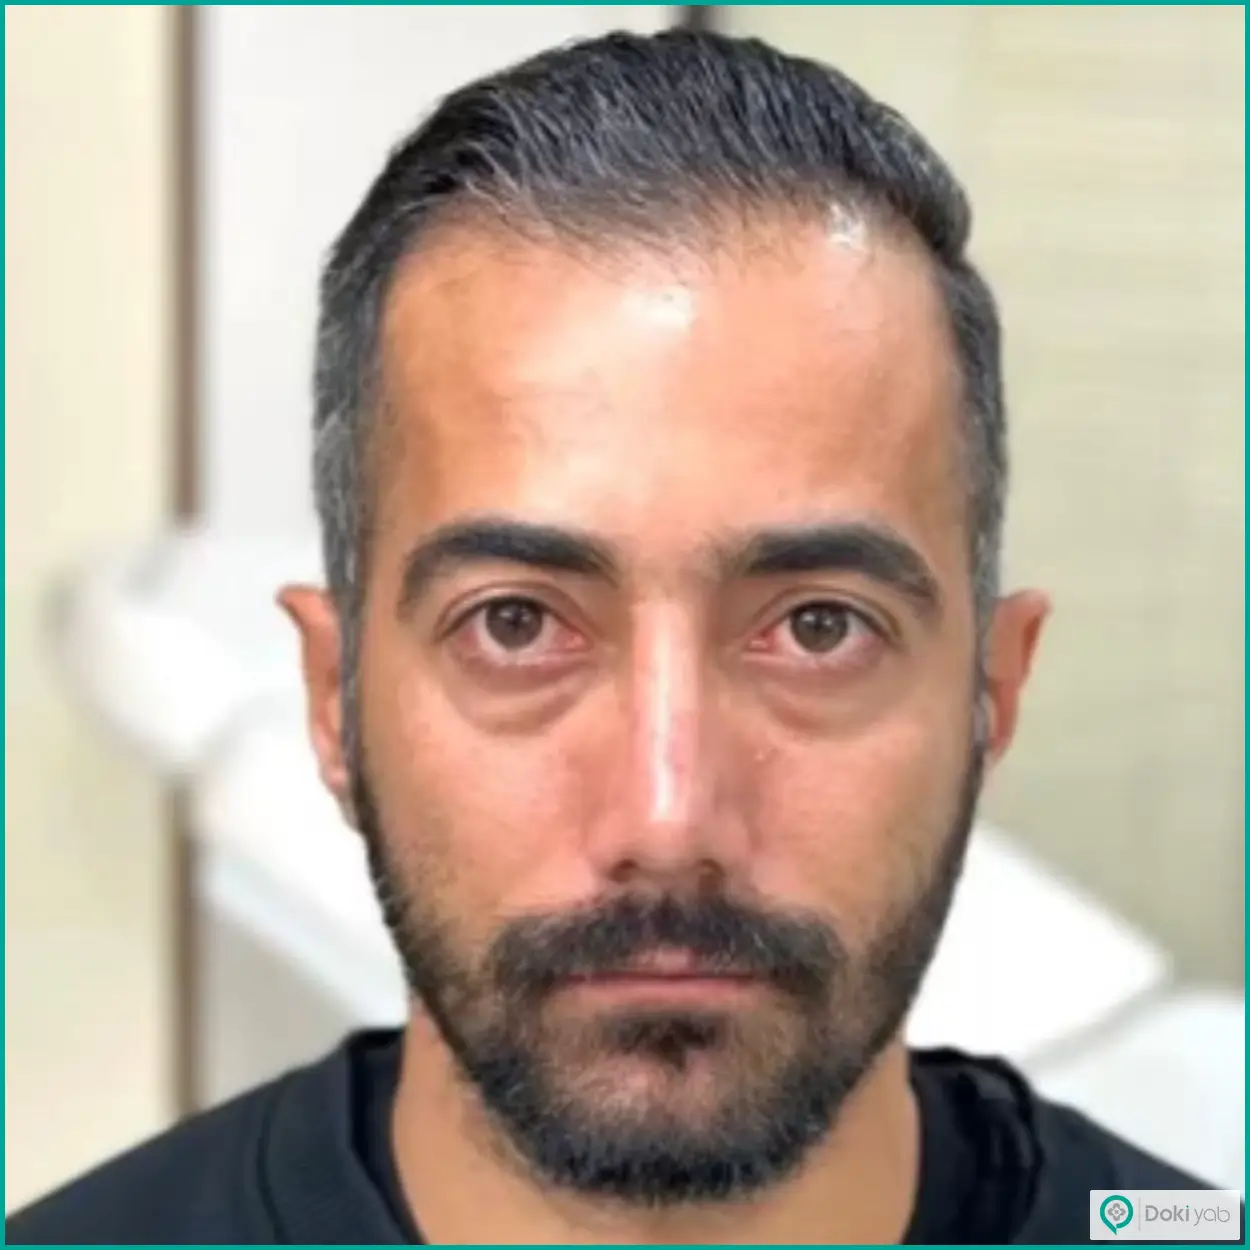 نمونه عمل بینی طبیعی مردانه دکتر آمیتیس نوذری جراح بینی شیراز